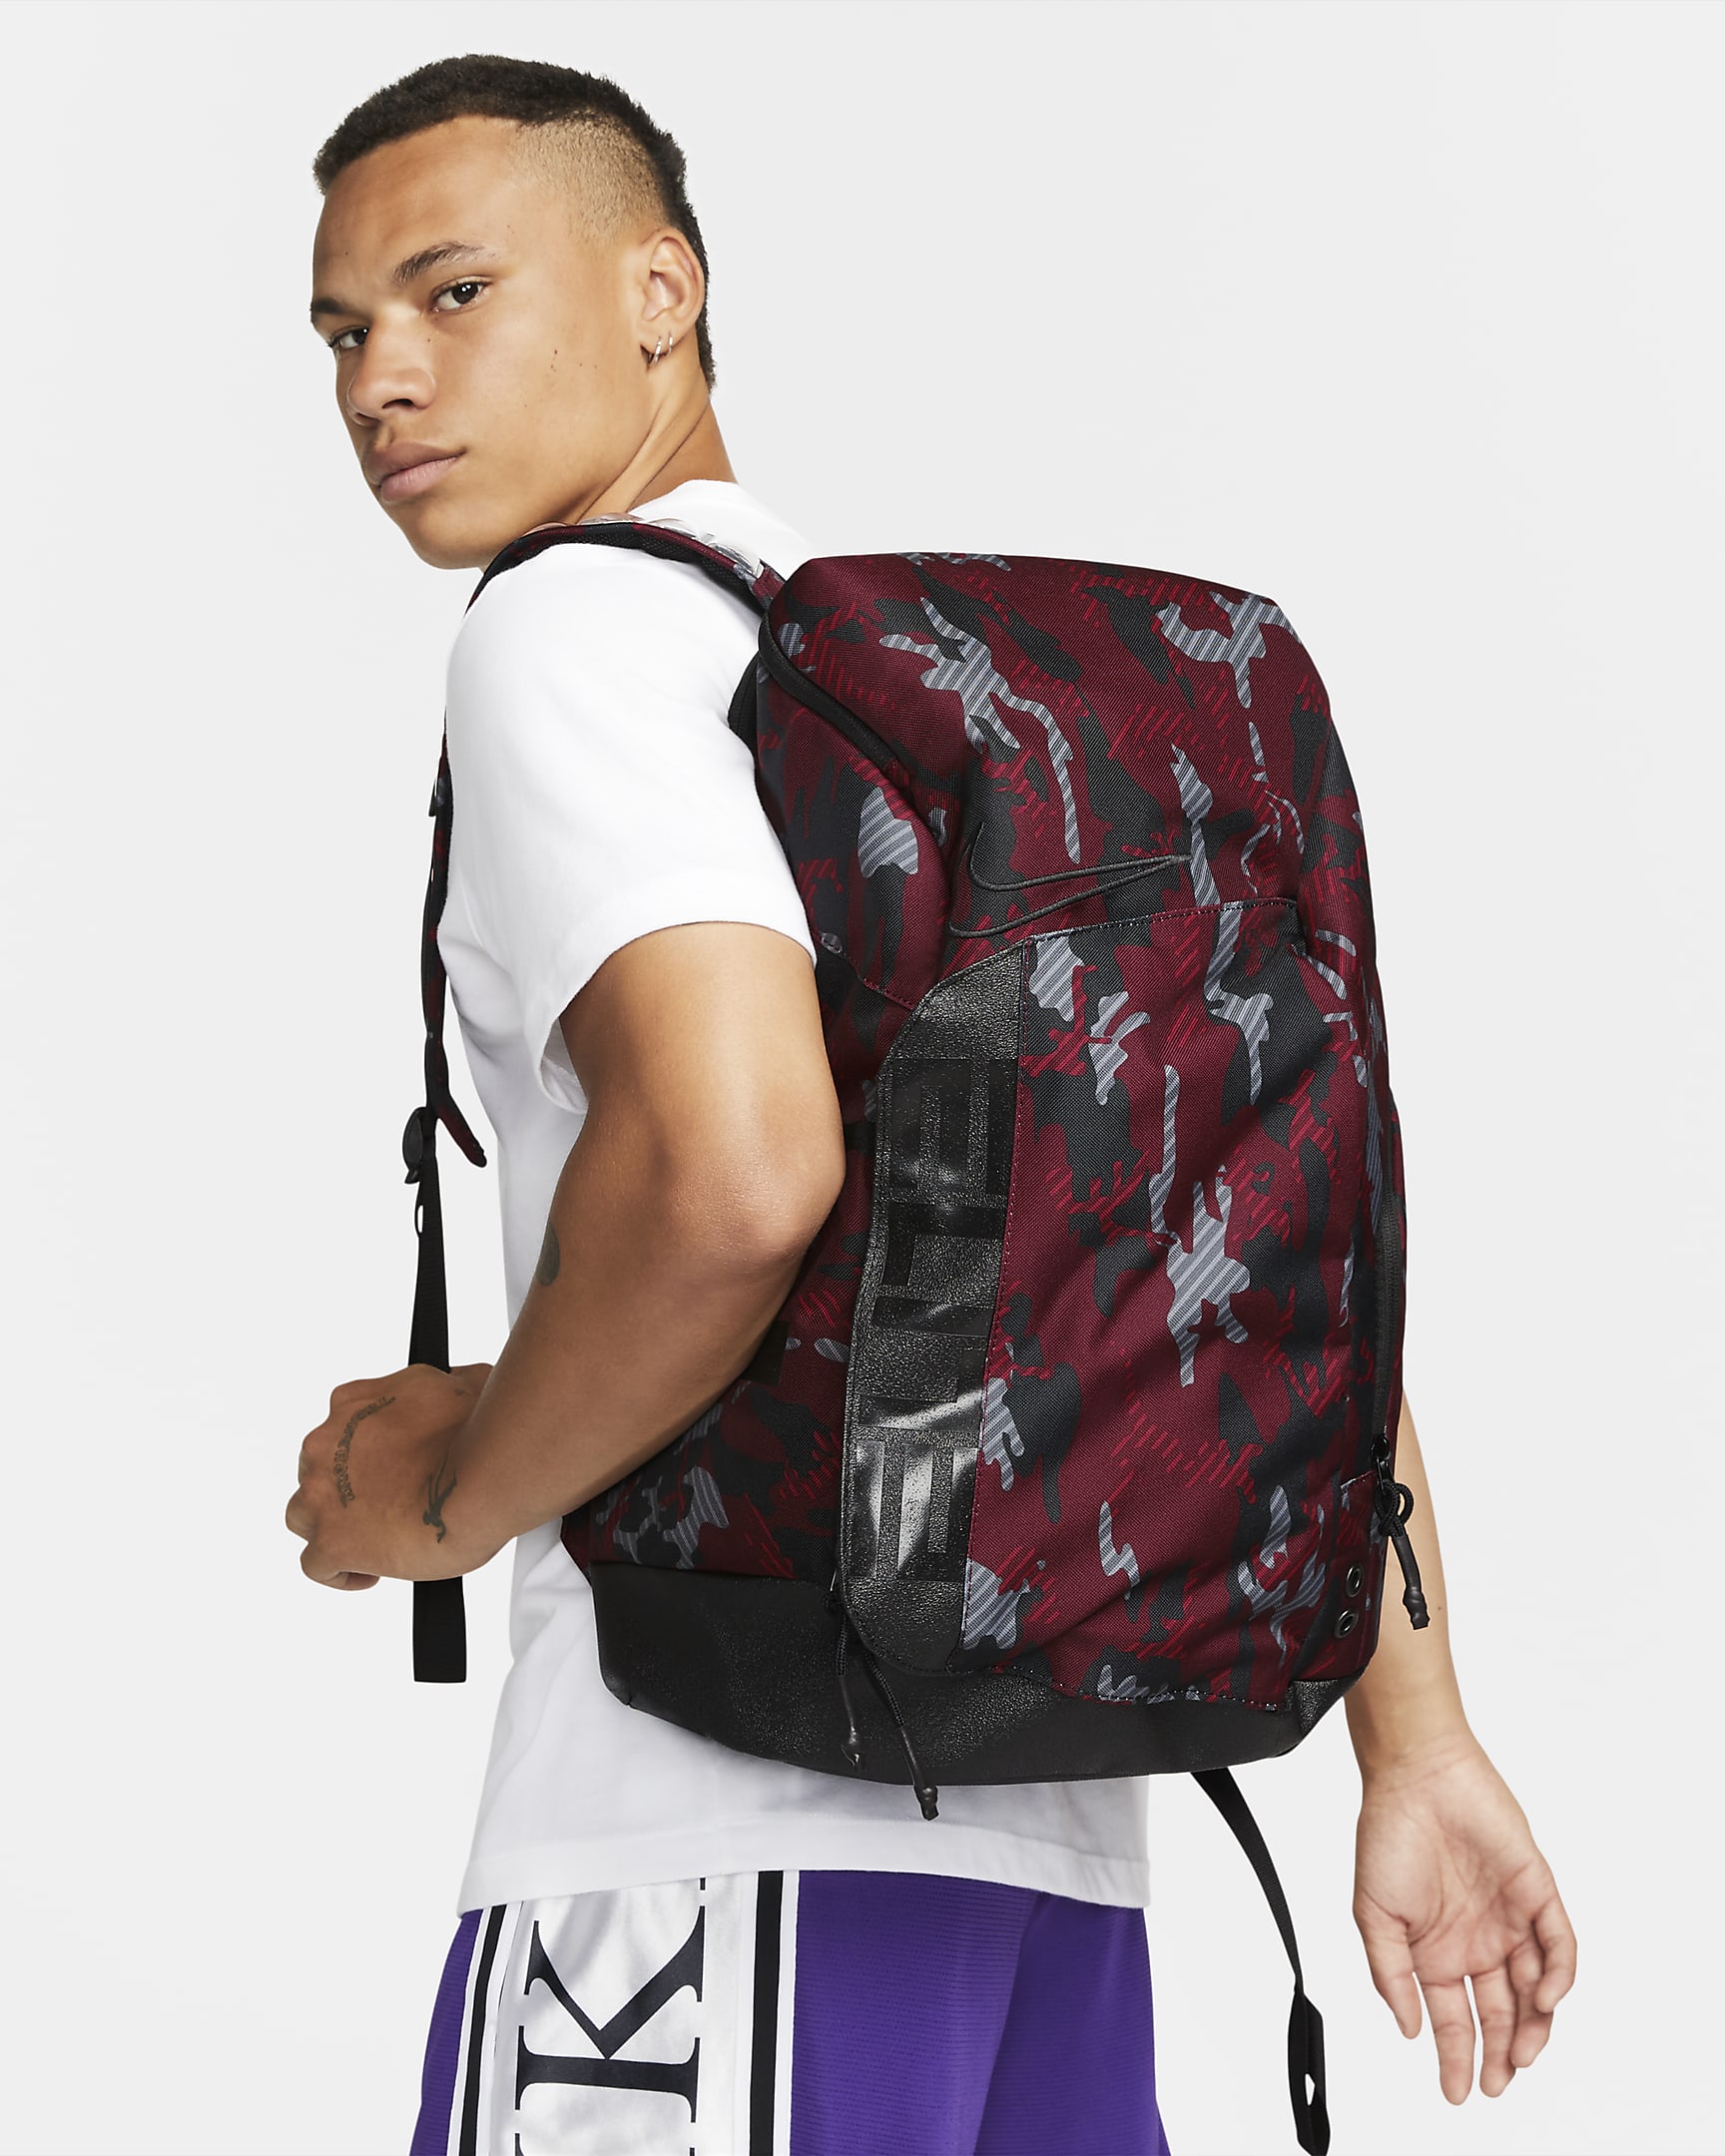 Nike Elite Pro Printed Basketball Backpack (32L). Nike.com